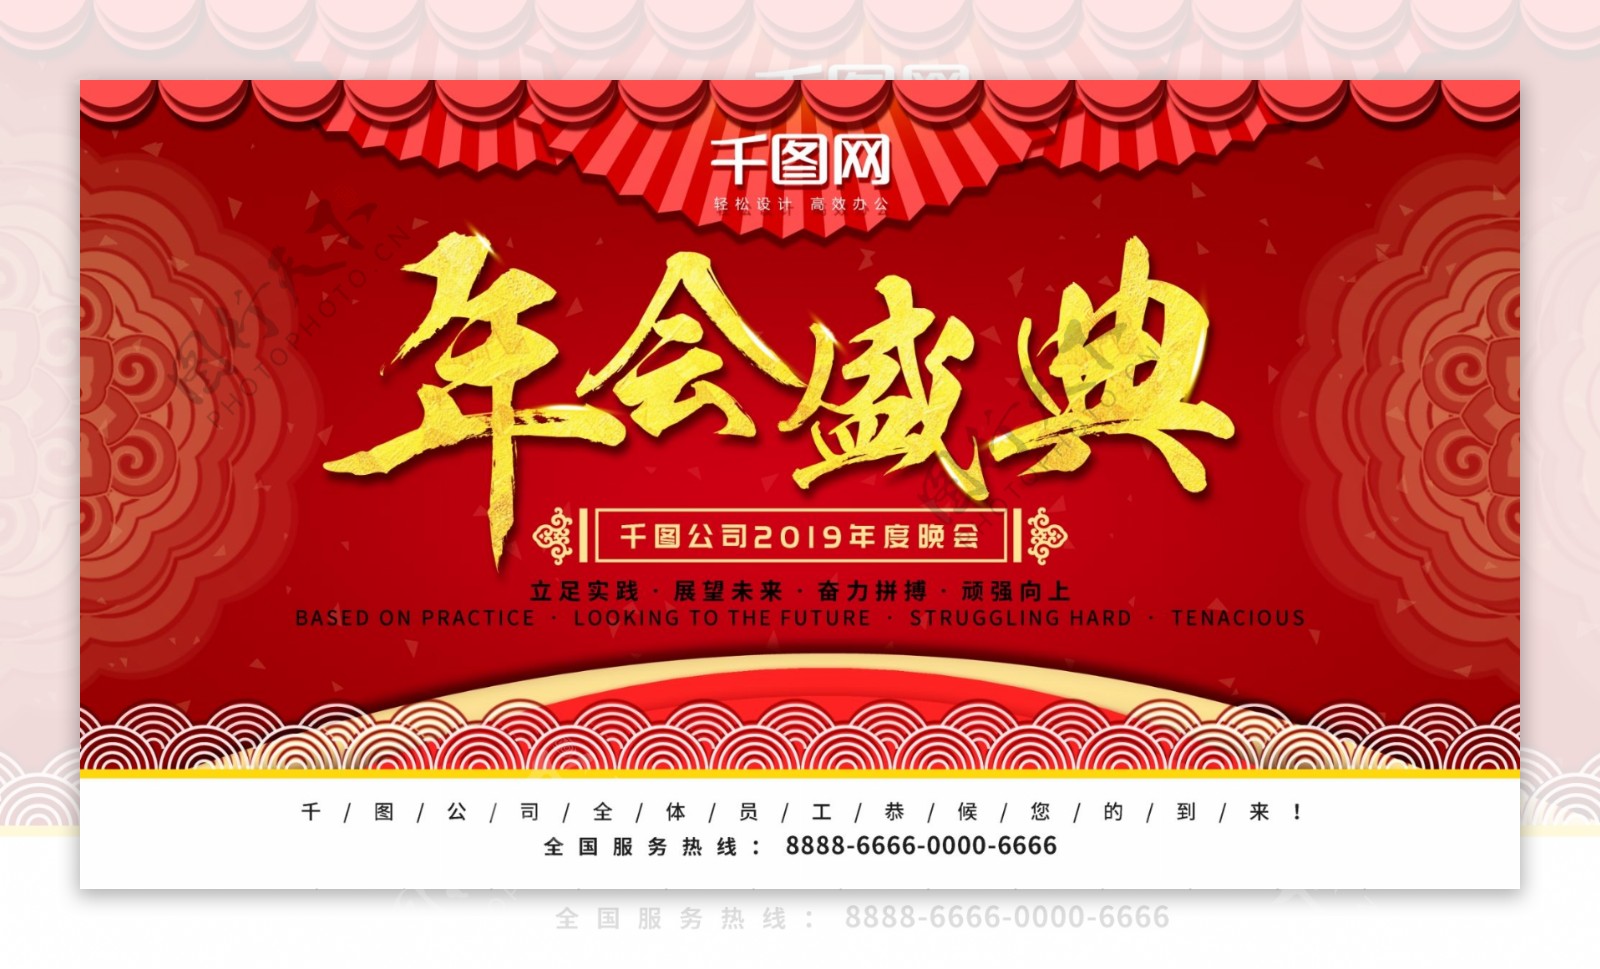 原创大气红色喜庆企业文化年会盛典展板海报